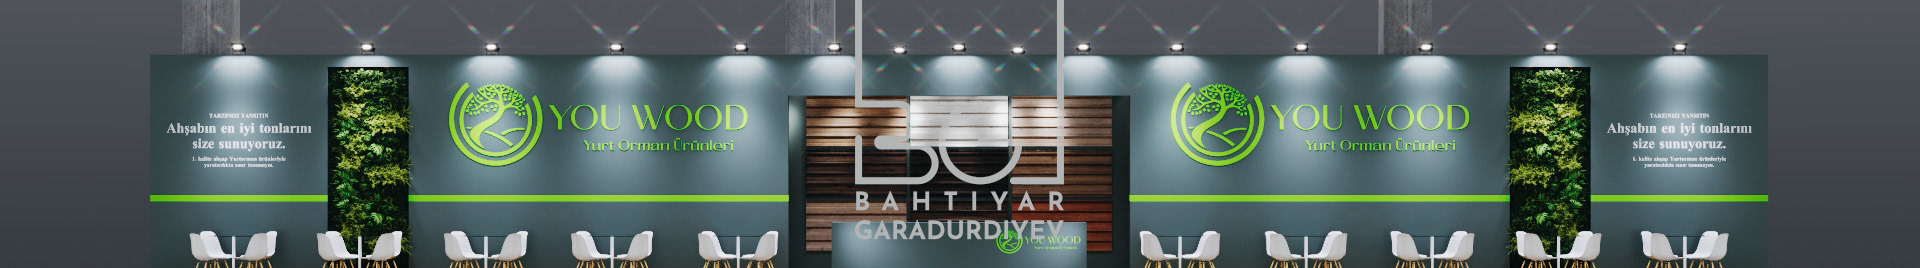 Banner del profilo di Bahtiyar Garadurdiyev